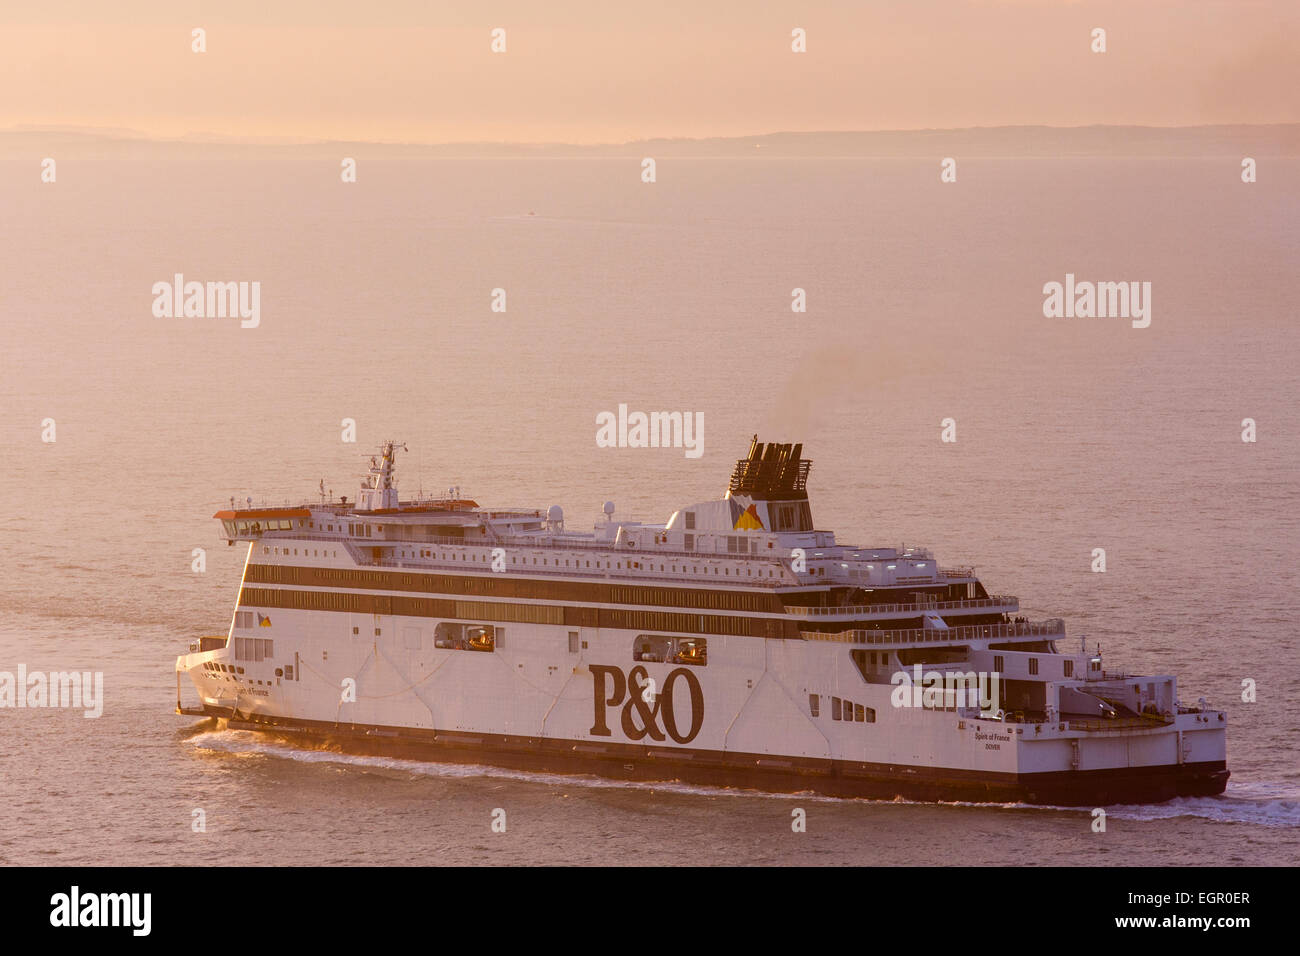 Un traghetto per auto P&o "Spirit of France" che parte da dover attraverso la Manica verso la costa francese sullo sfondo, in un'alba. Foto Stock